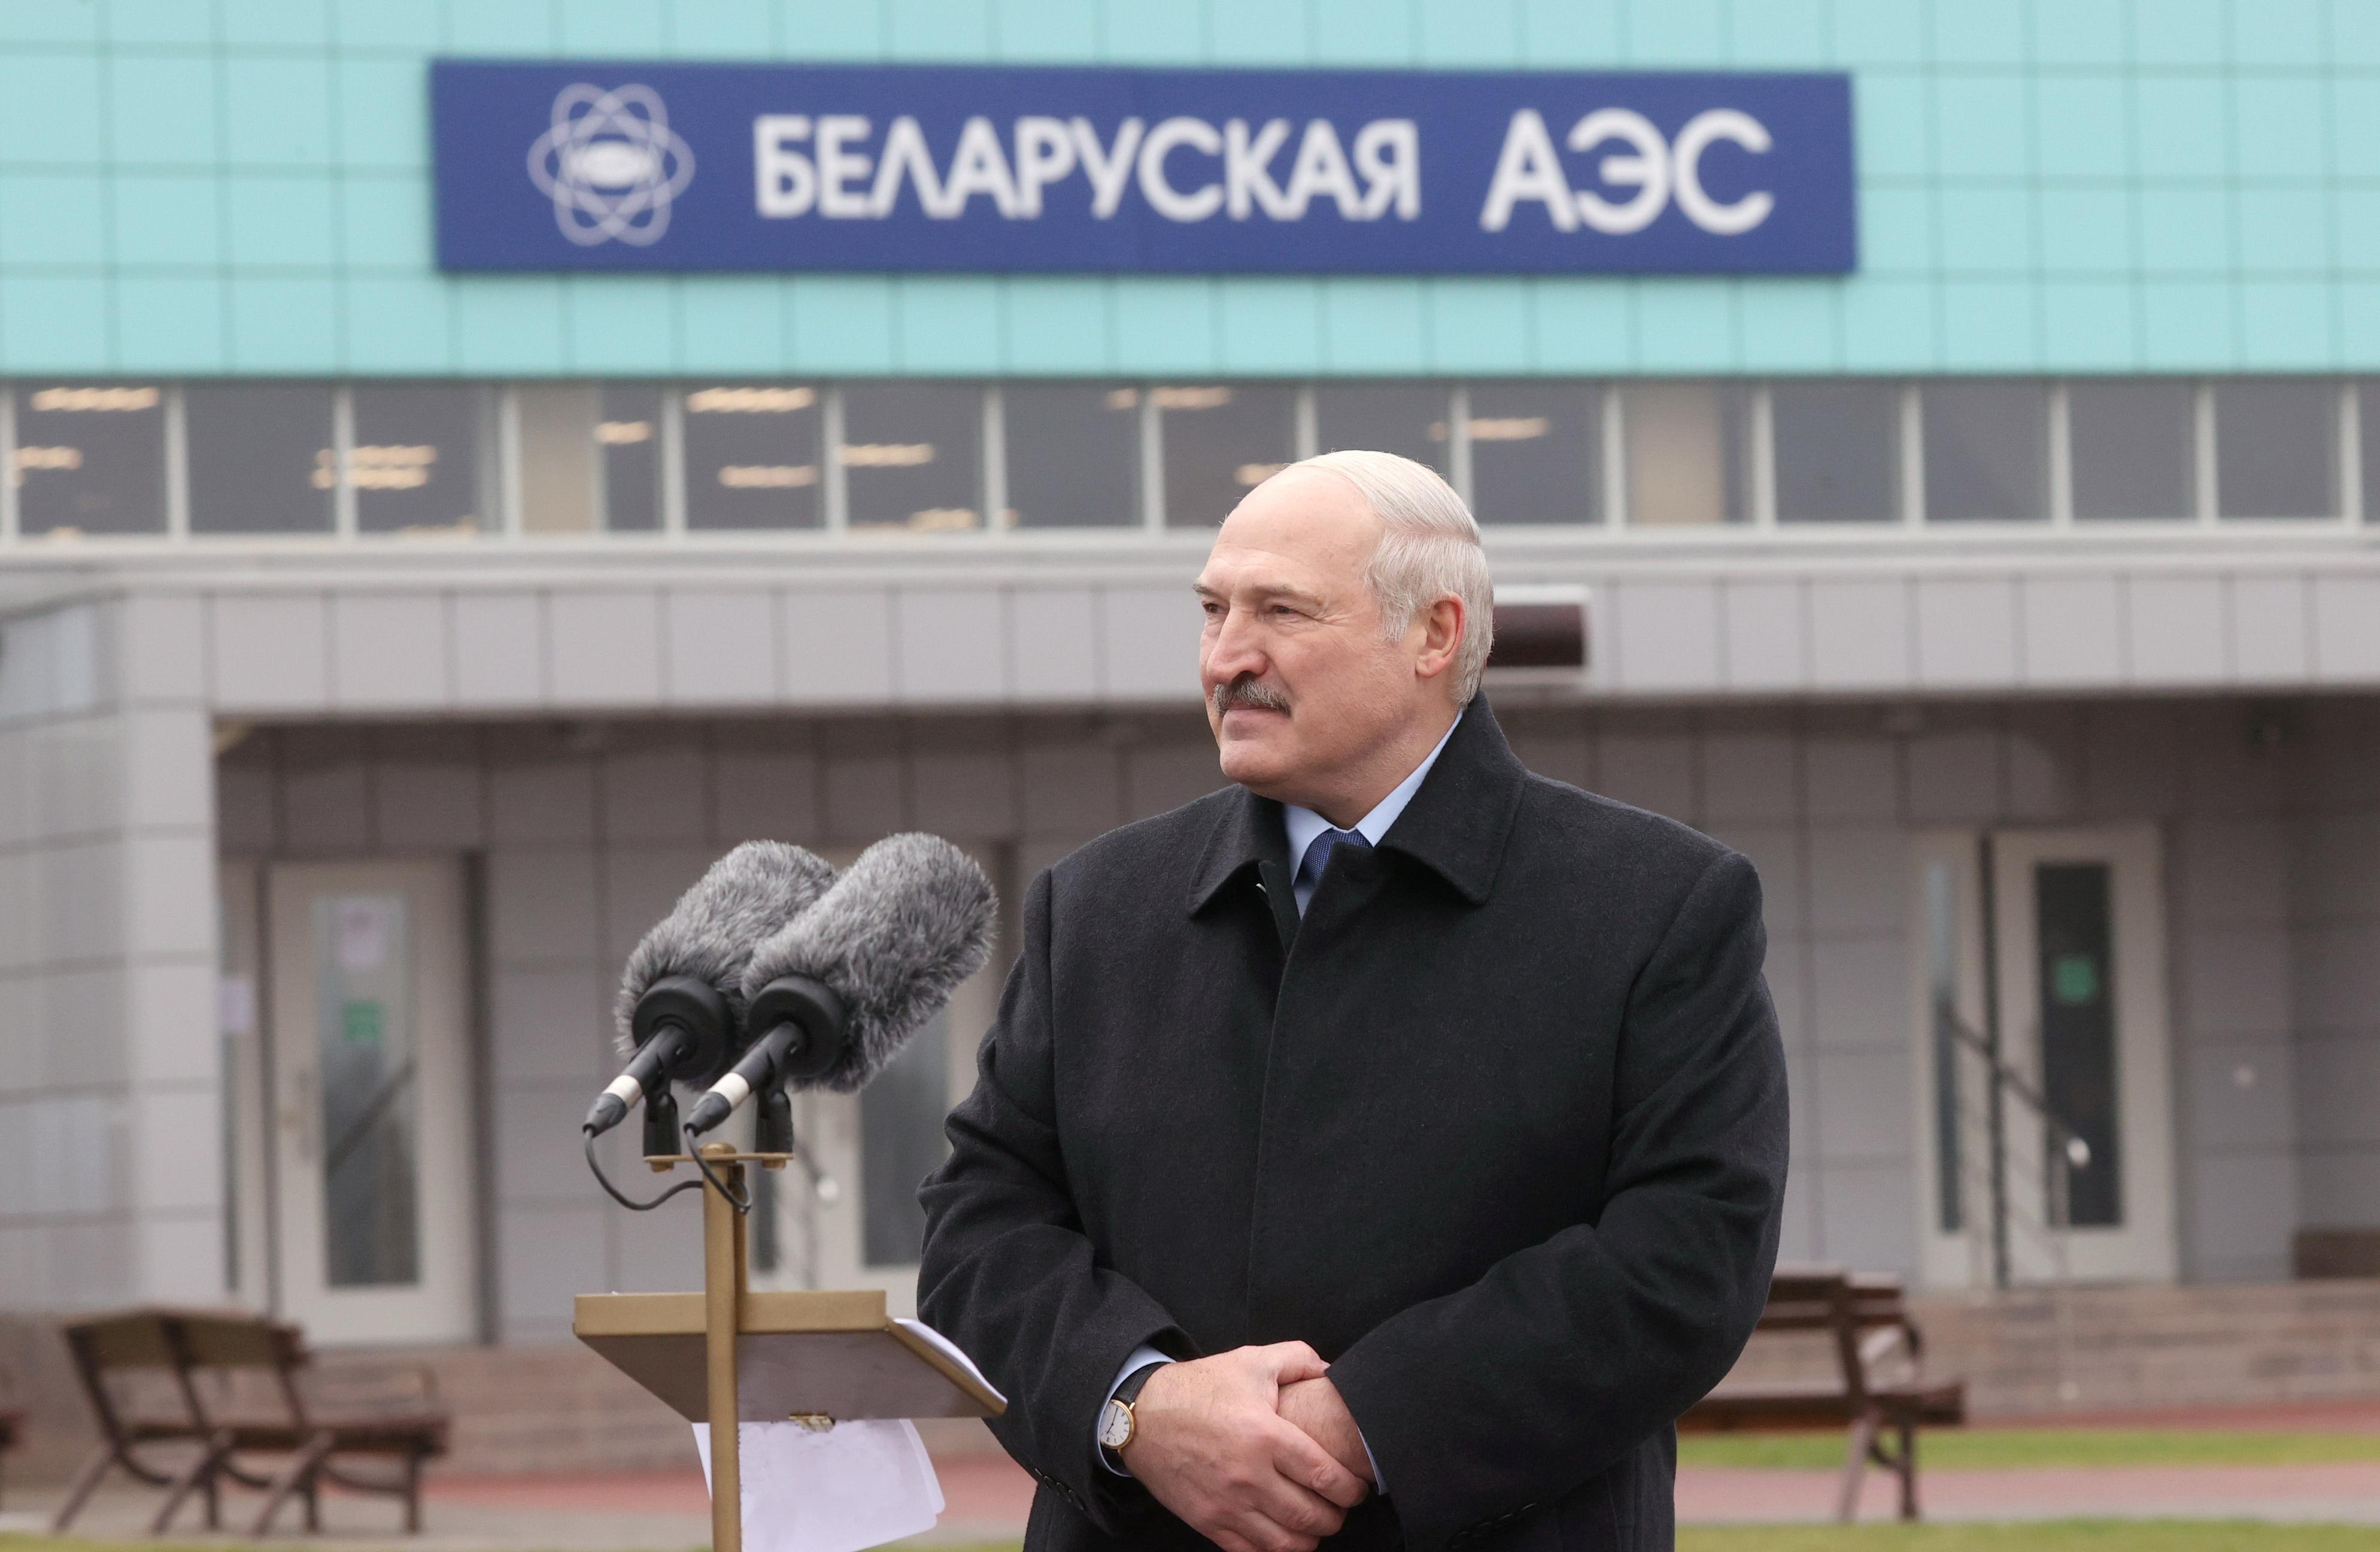 Открытие аэс. Белорусская АЭС Лукашенко. Лукашенко на белорусской АЭС. Директор белорусской АЭС. Белоруссия ядерная держава.